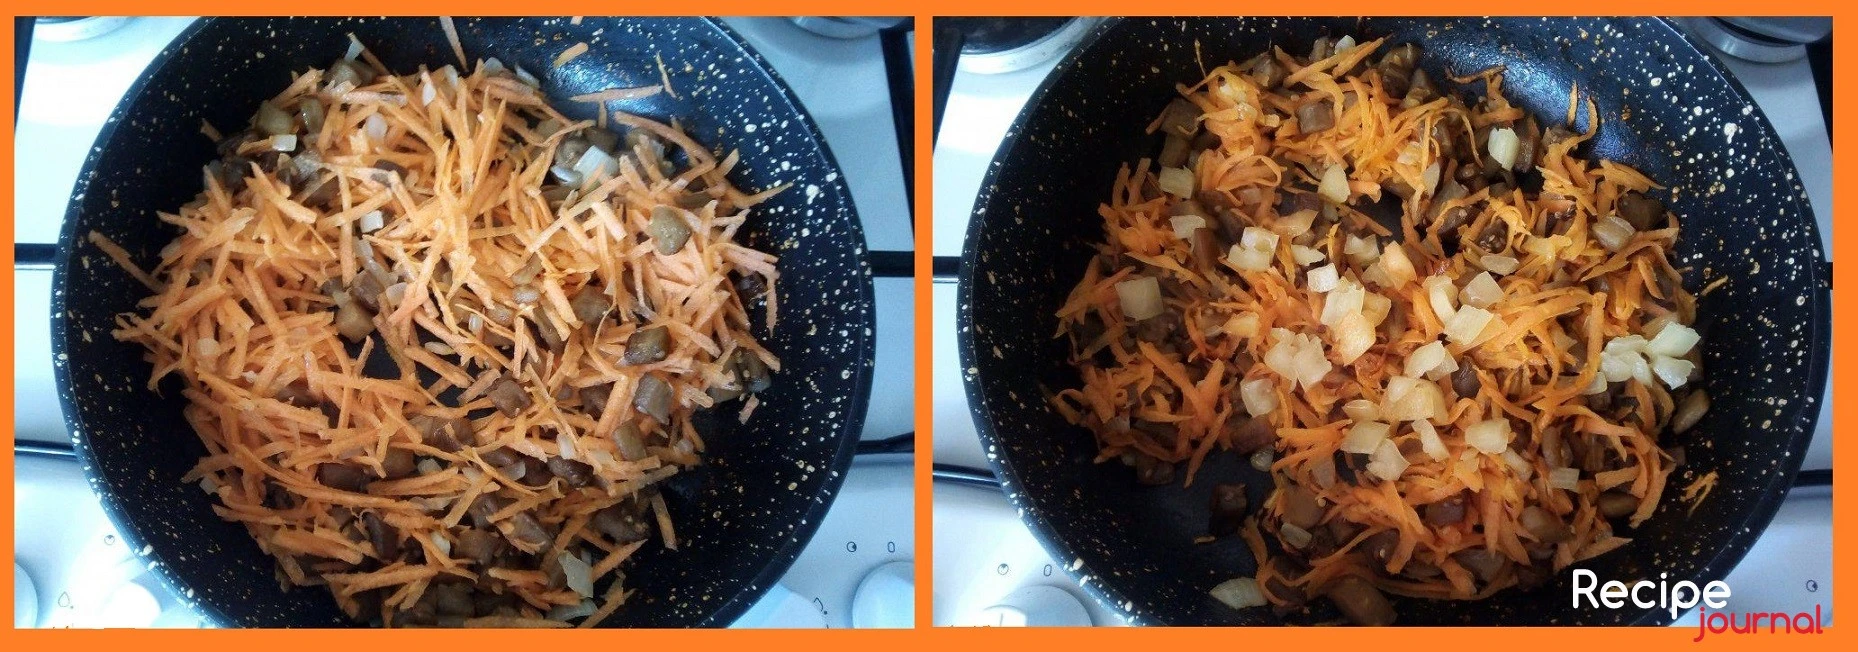 Очищенную морковь натираем на крупной терке и добавляем в сковороду, перемешиваем и пассеруем, пока режем кубиком болгарский перец. Добавляем перец в сковороду, перемешиваем и снова тушим около 5 минут.